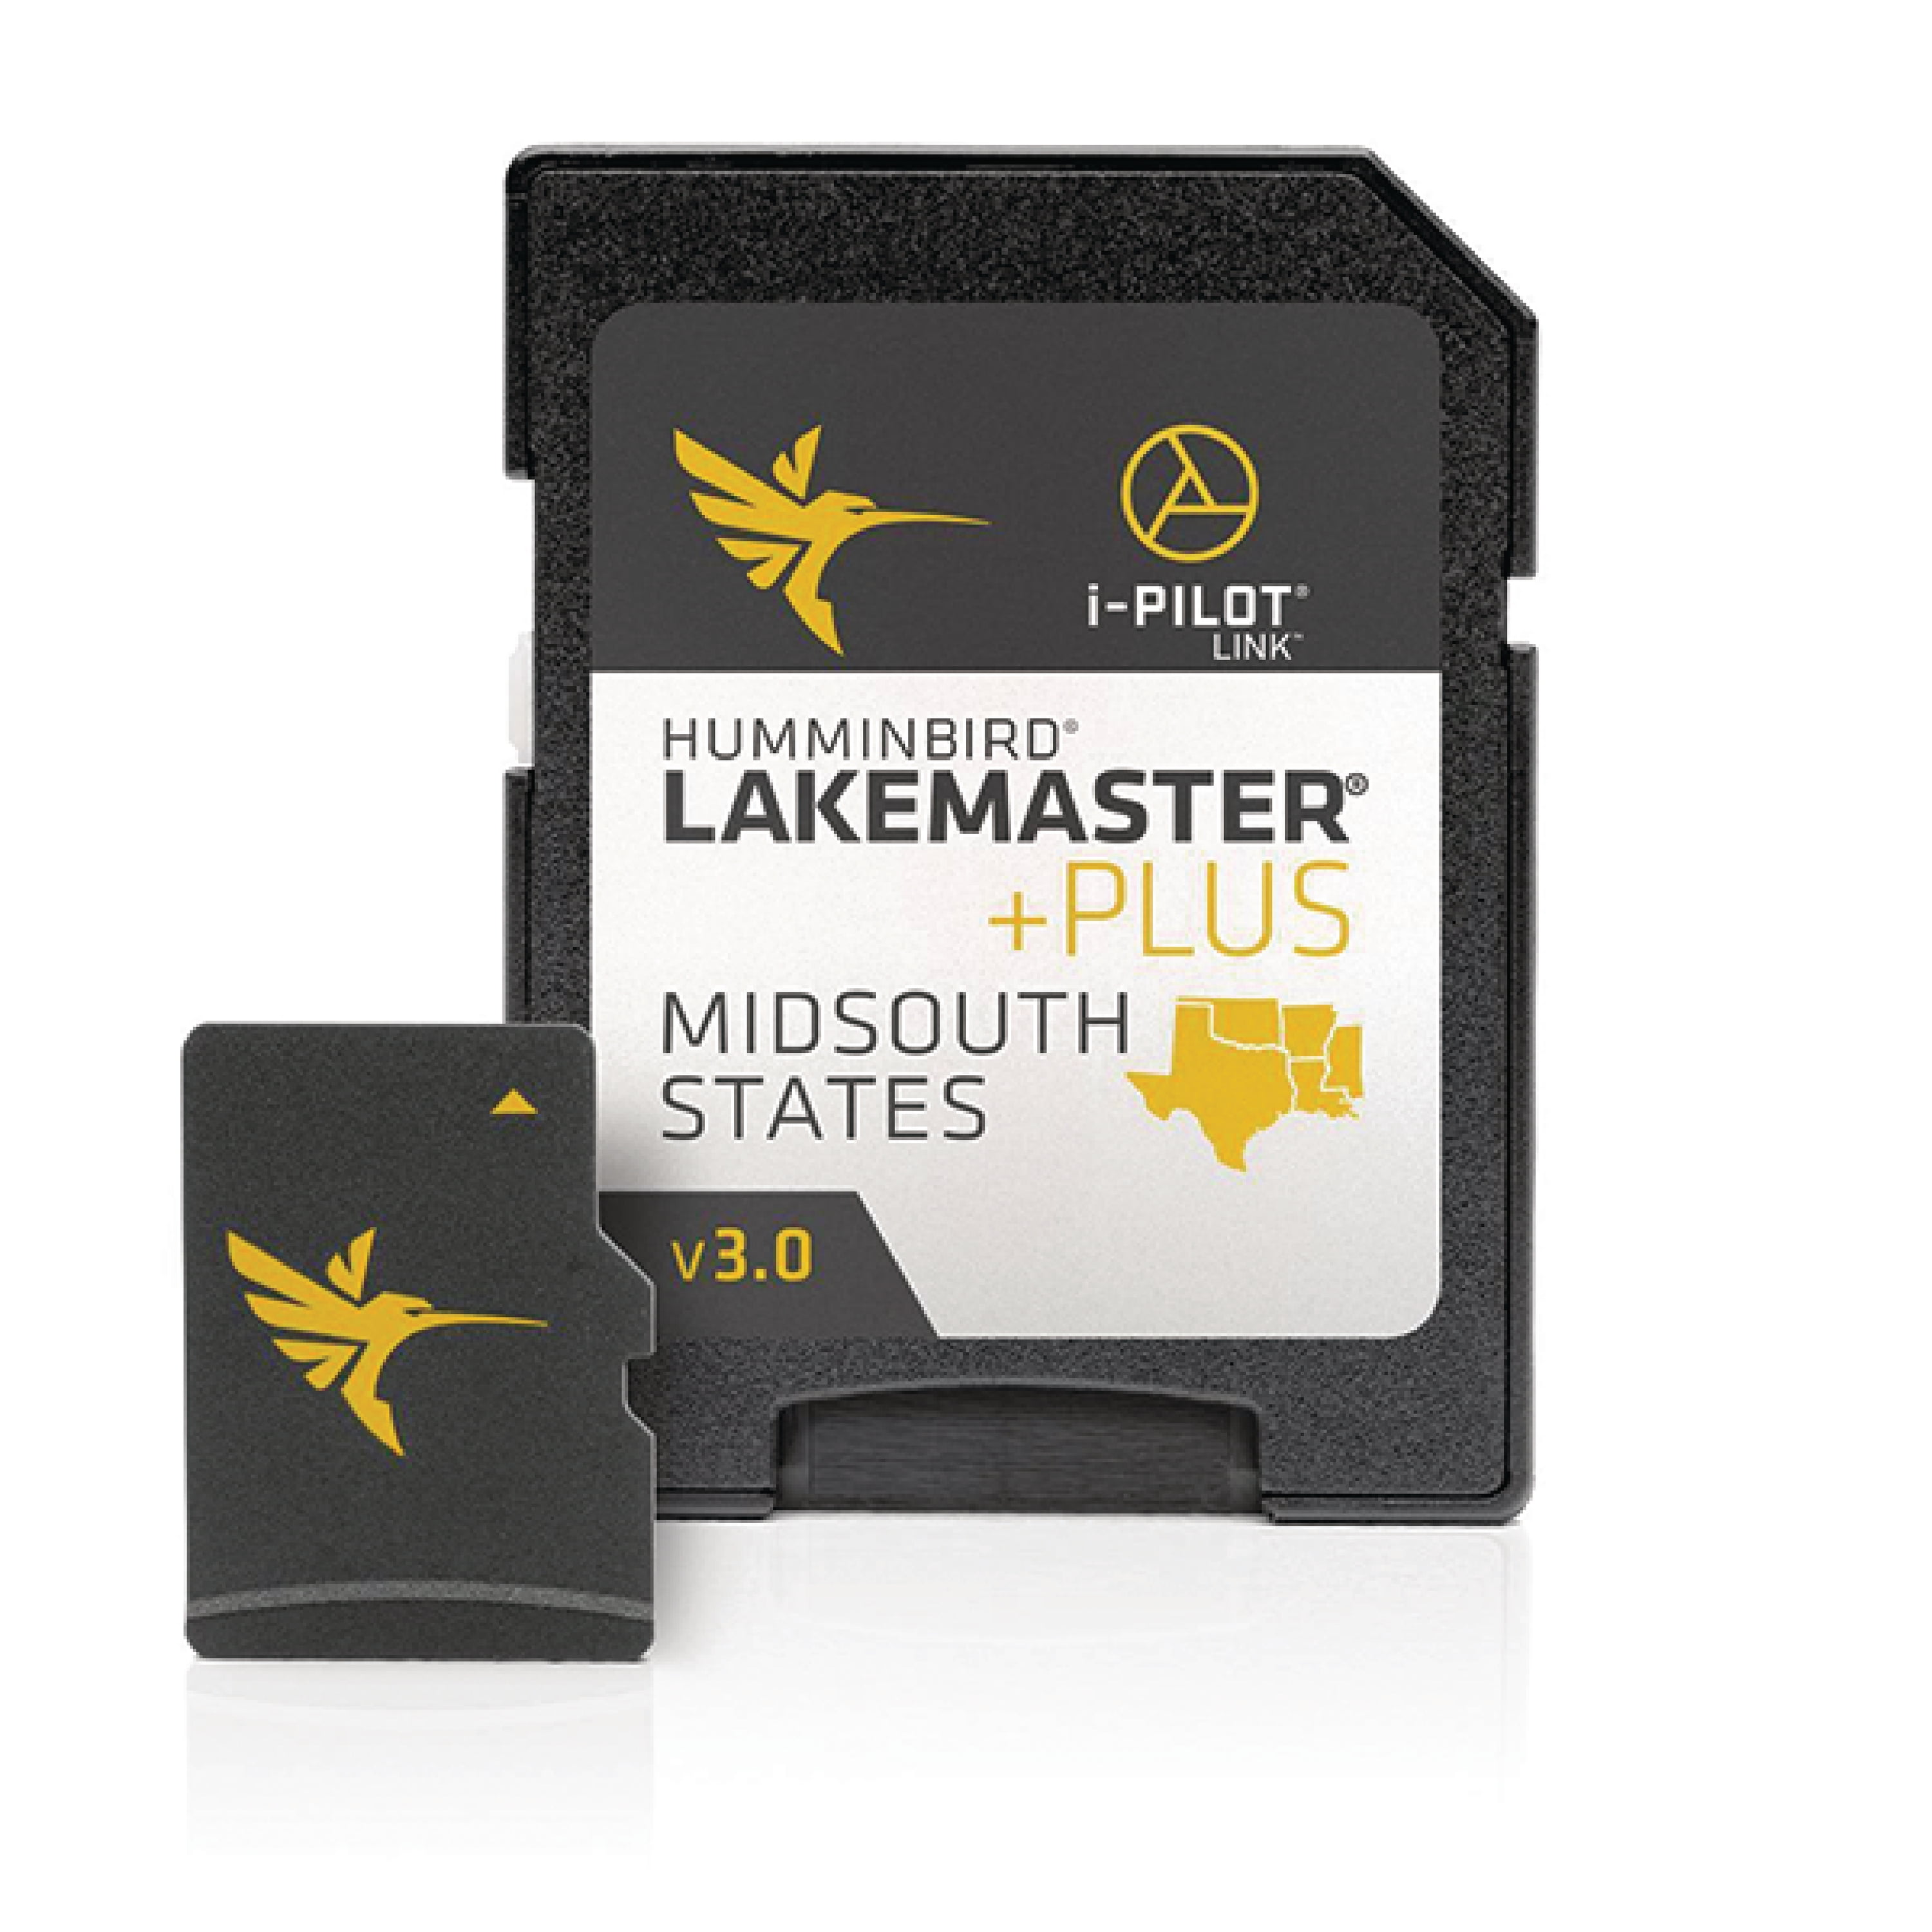 LakeMaster VX - Wisconsin V1 601010-1